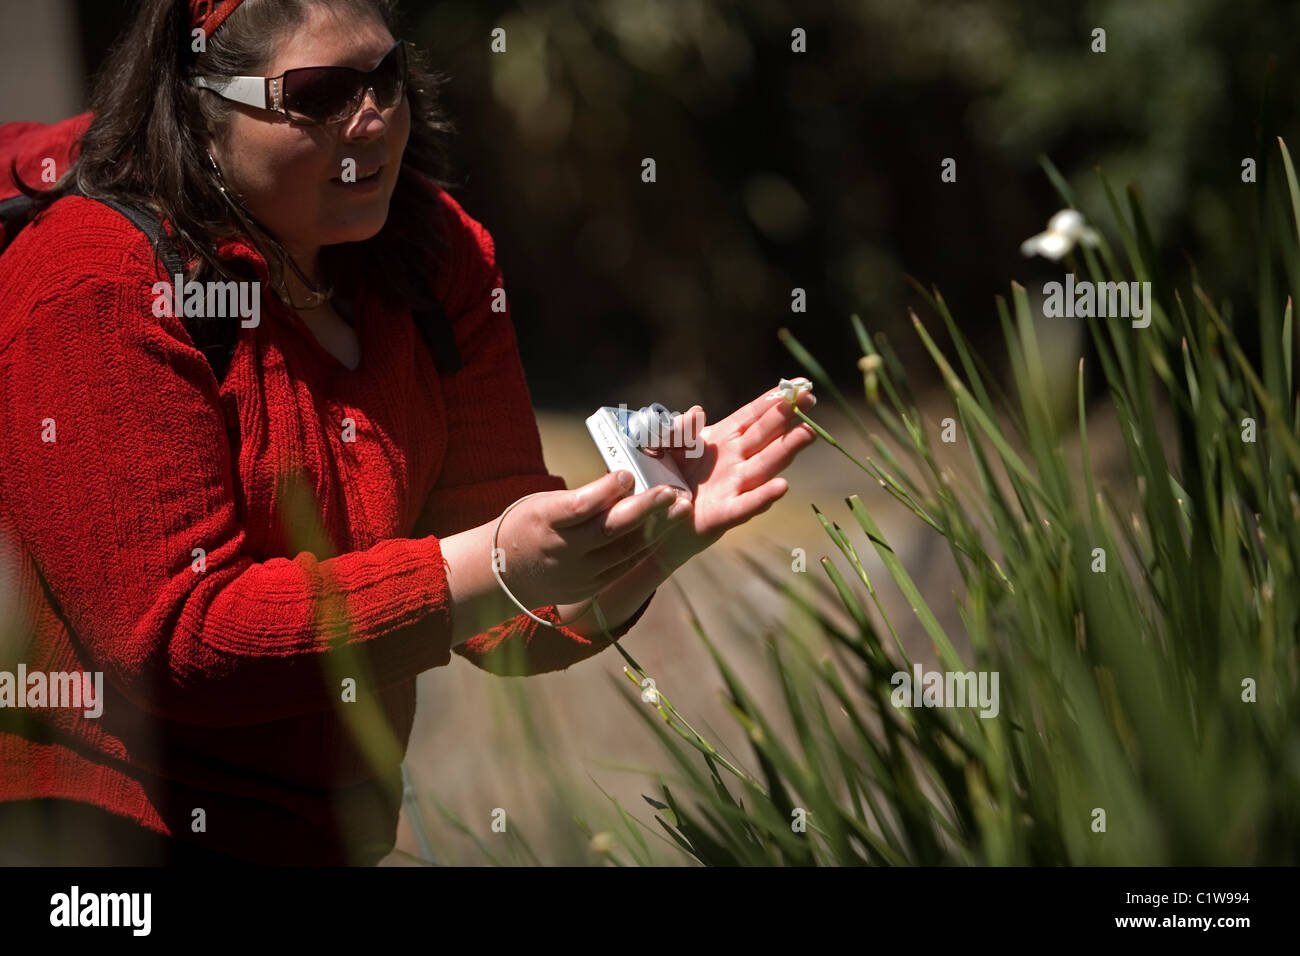 Un élève aveugle touche une plante comme il prend des photos d'elle à un atelier photo pour les aveugles et malvoyants à Mexico Banque D'Images